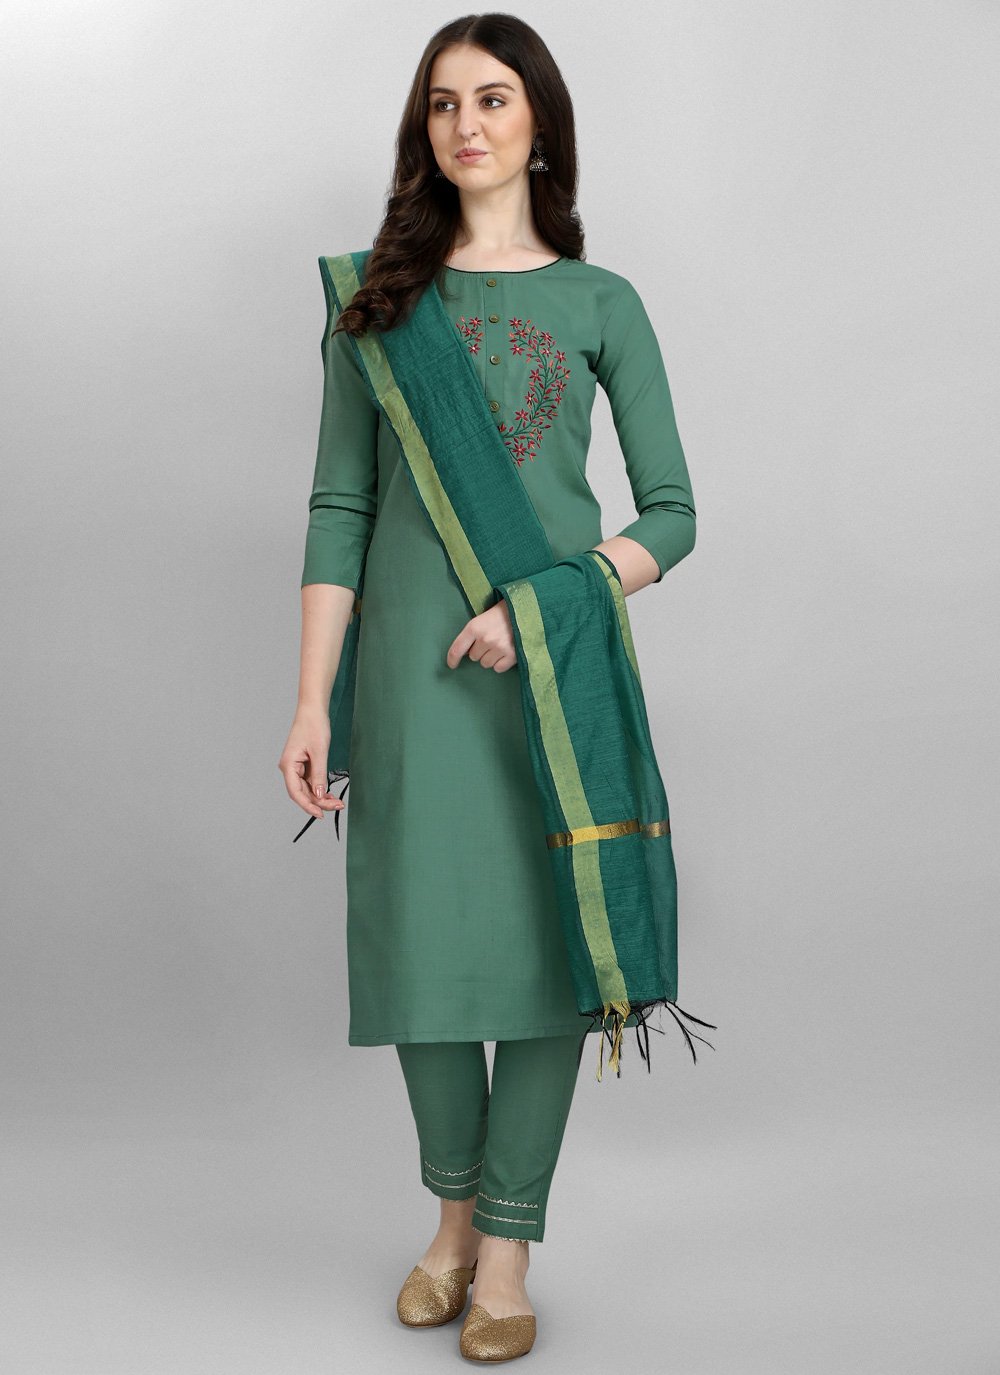 Ganga Saanvi Designer Ladies Cotton Salwar Suit Latest Catalog